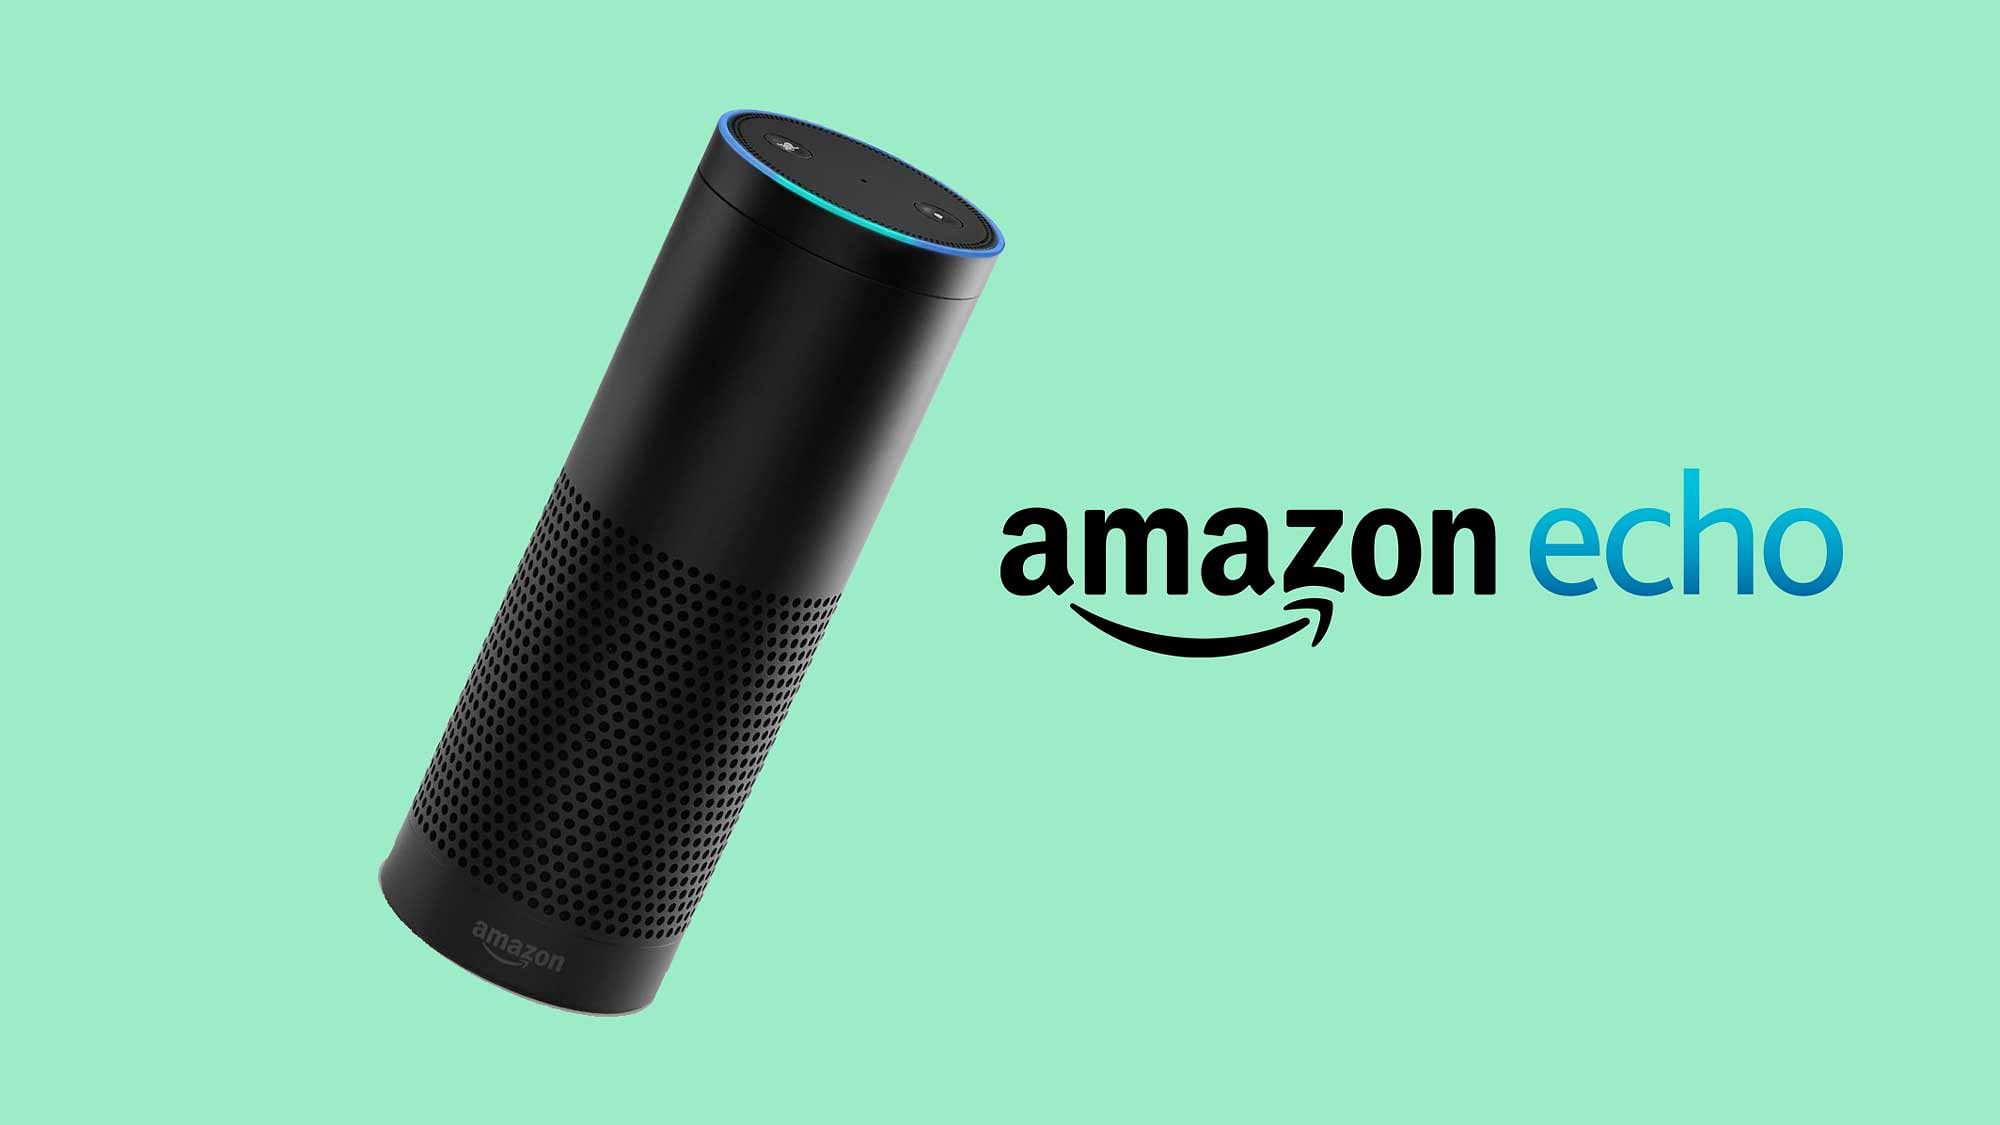 Amazon Echo. (Photo: Amazon)